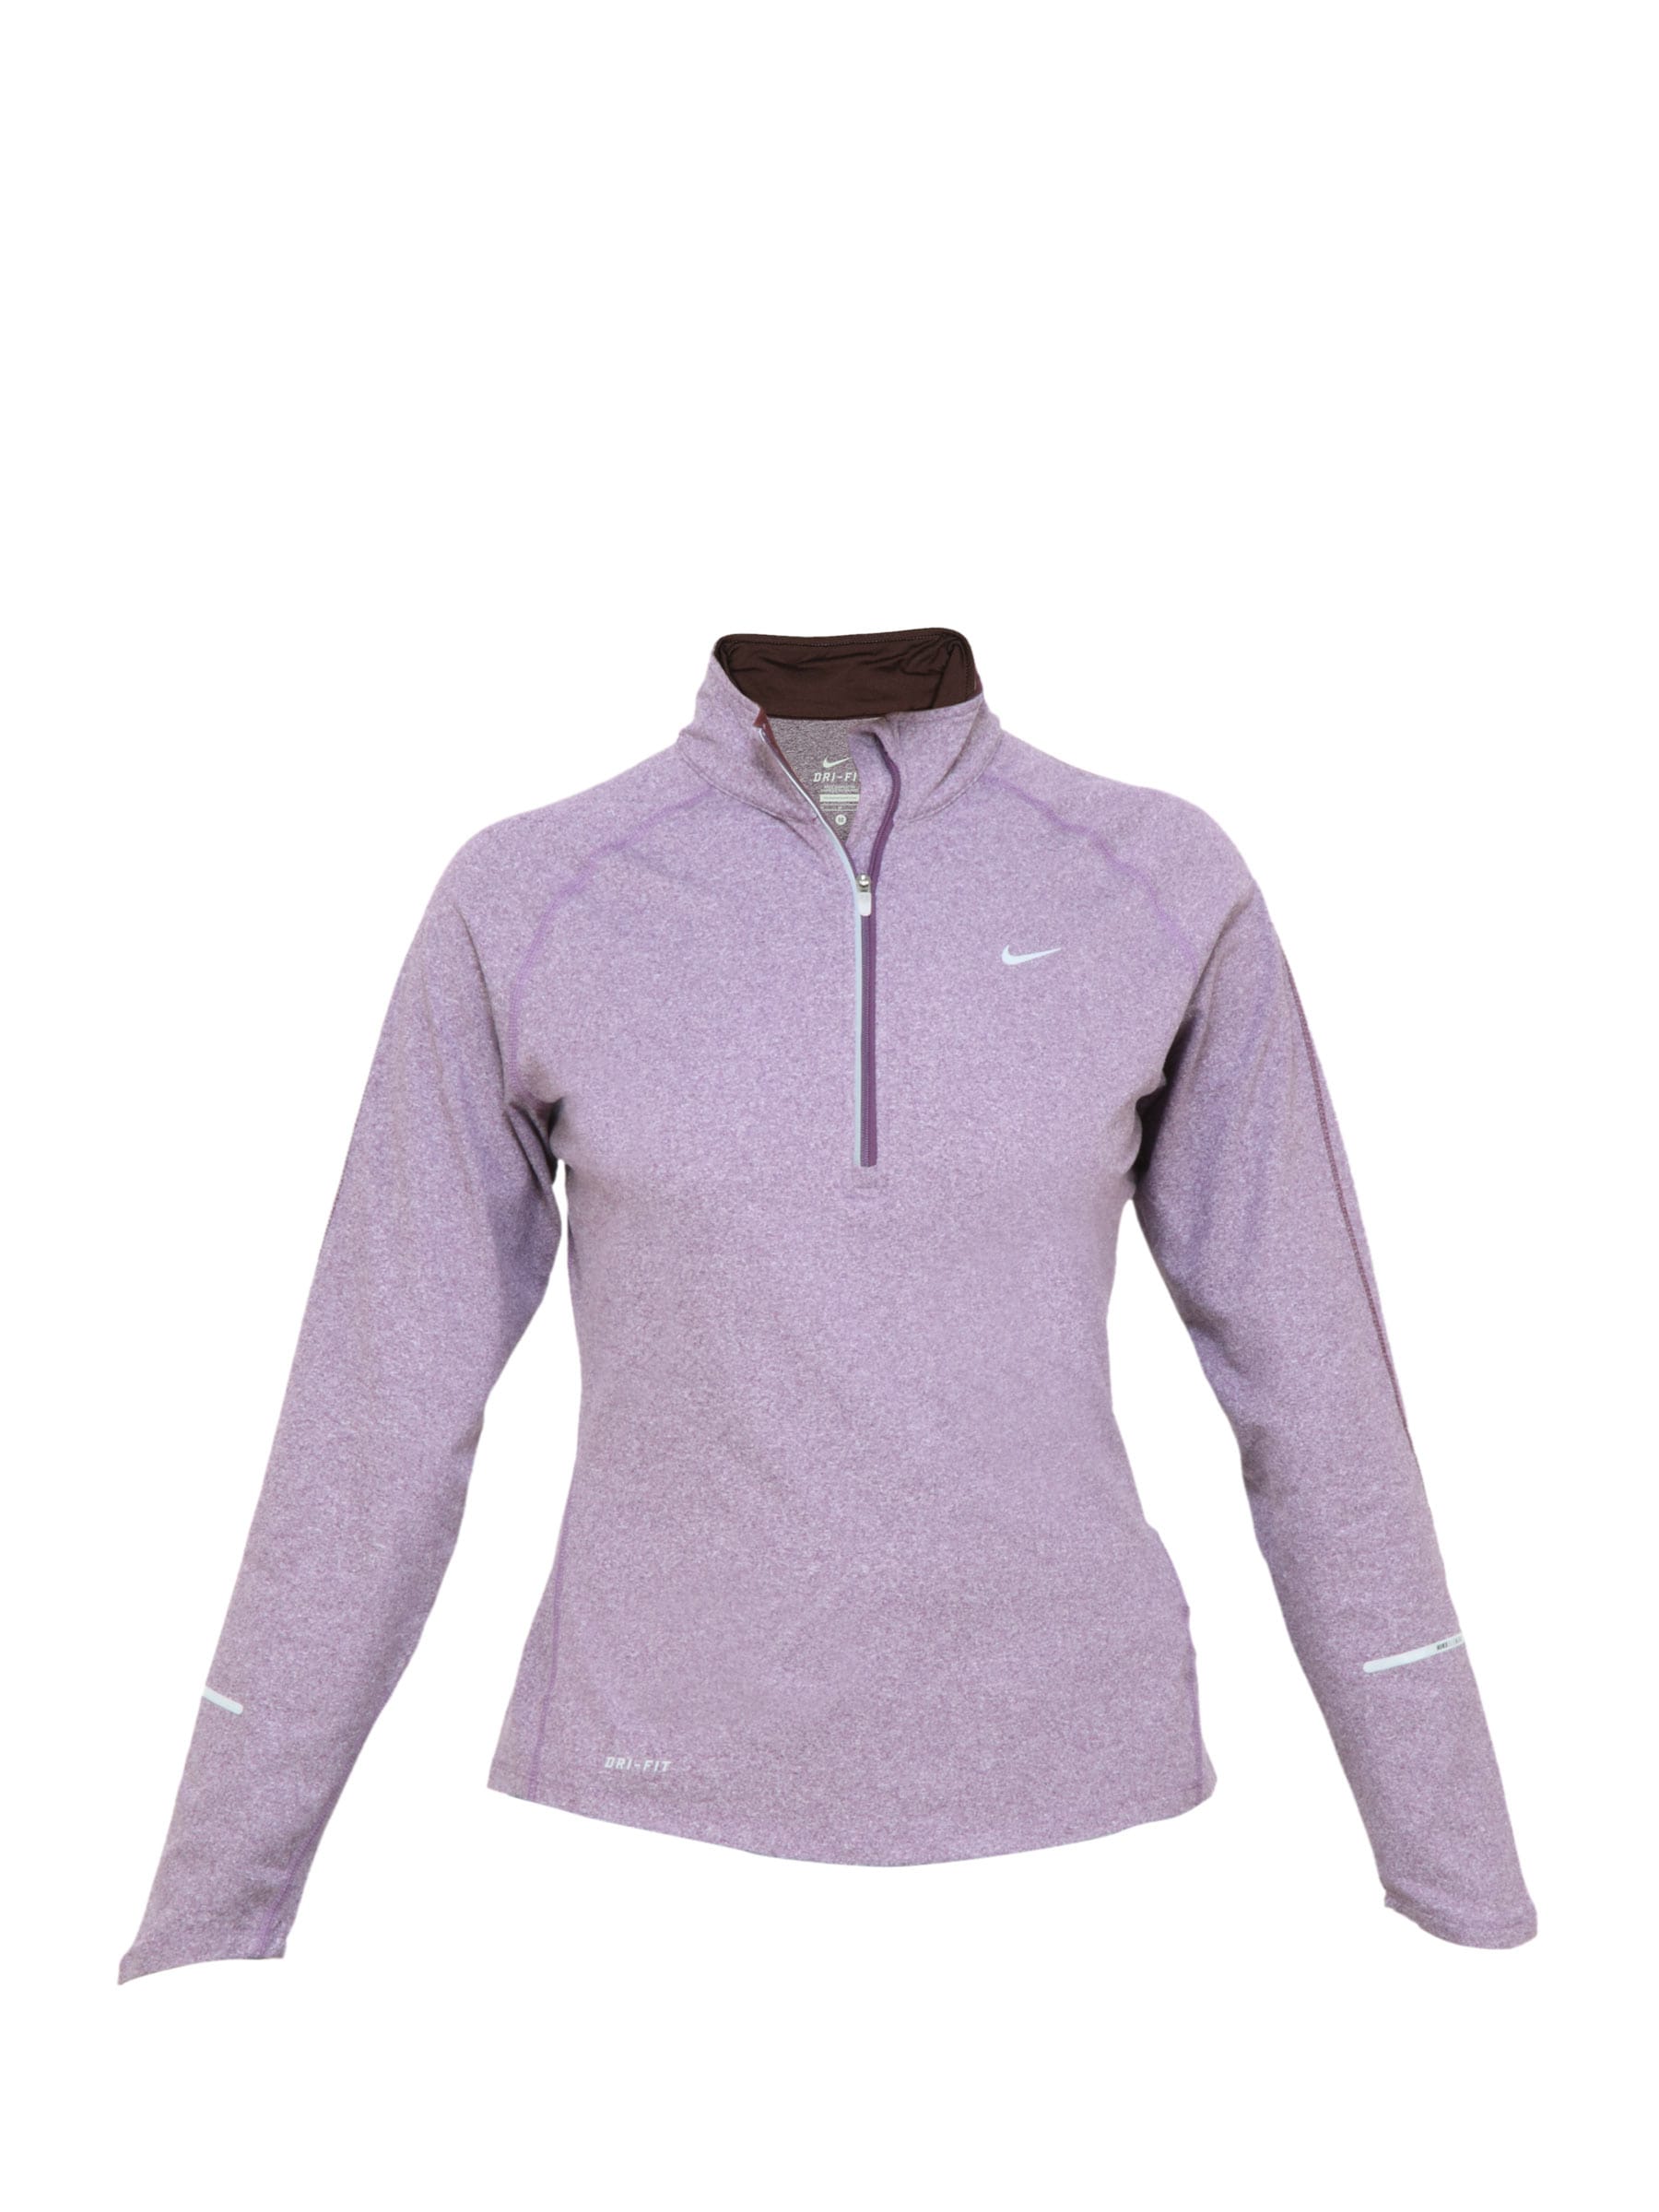 Nike Women Solid Purple Sweatshirt